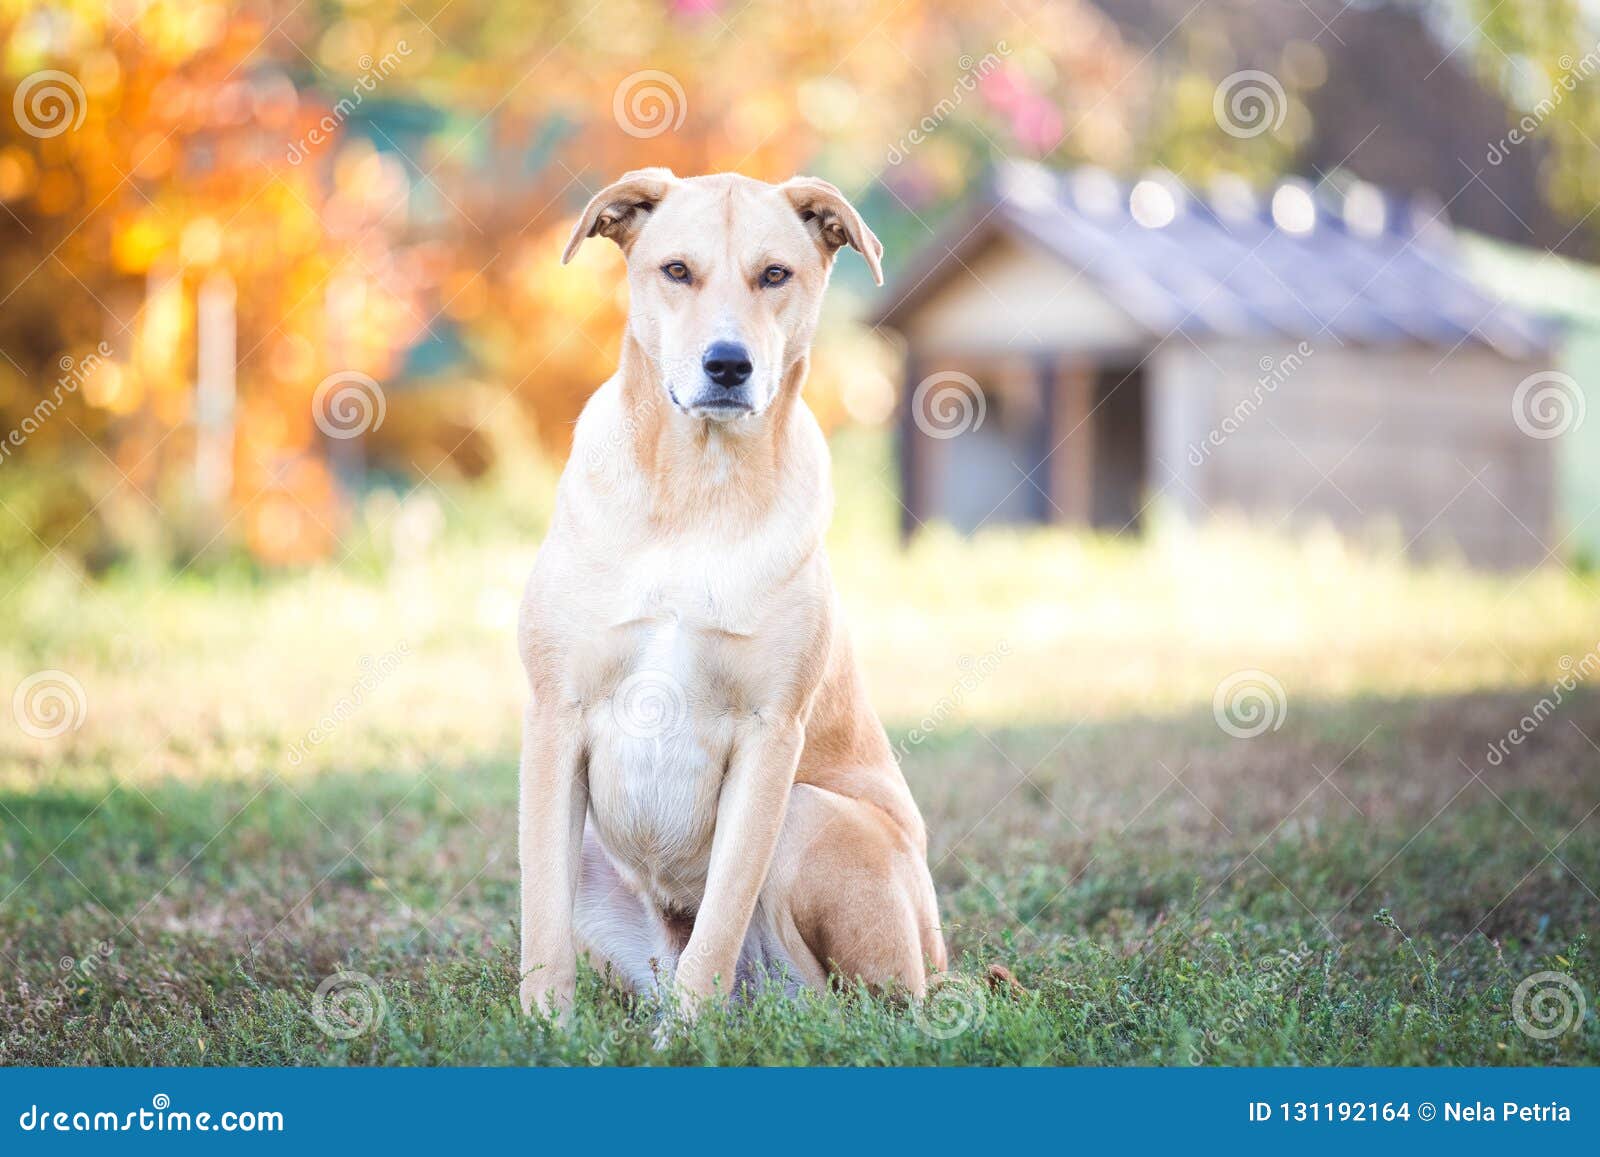 mixed breed labrador rescue dog in autumn garden